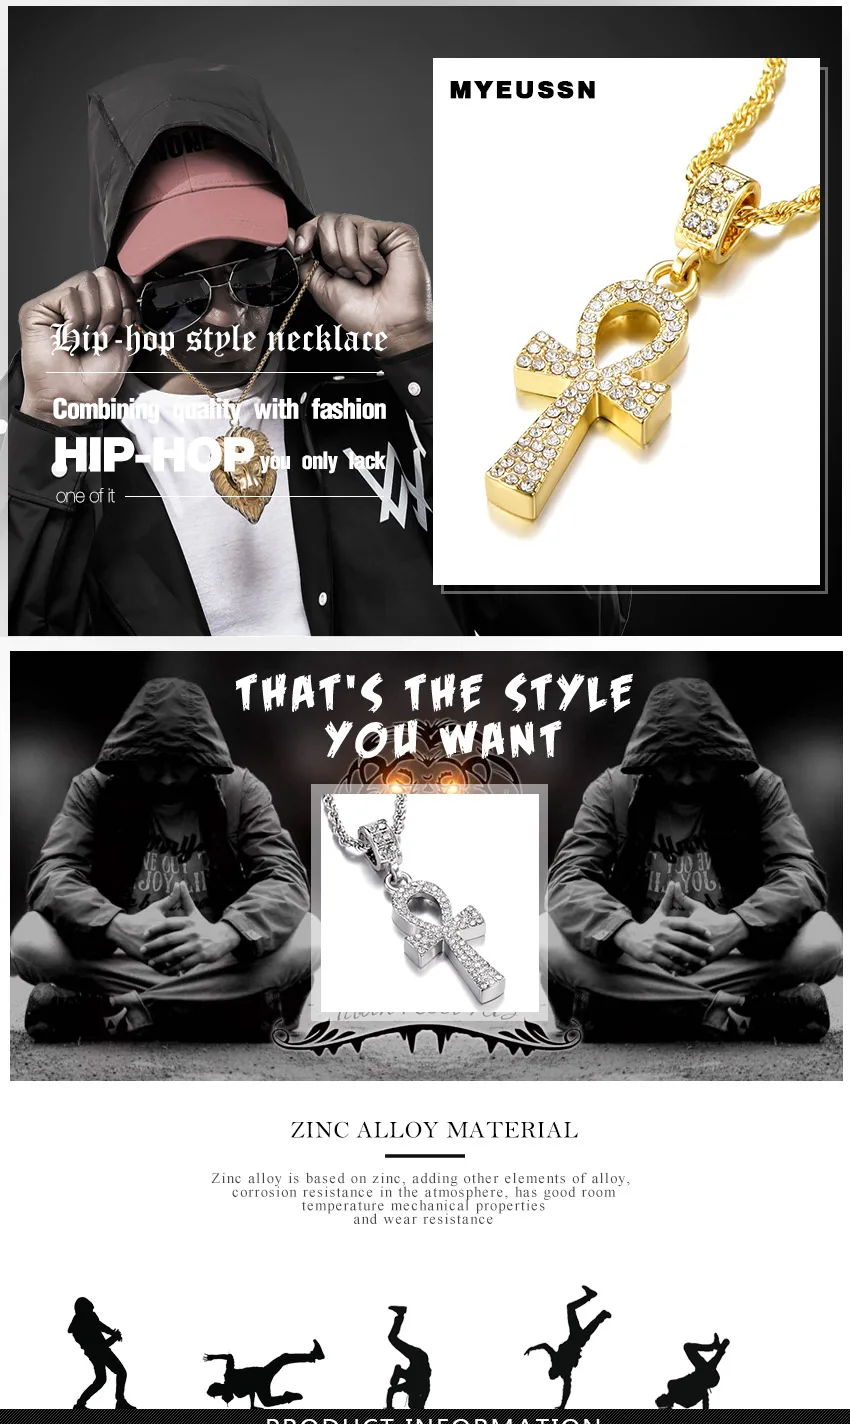 Подвеска из сплава с крестом для мужчин, золото/серебро, ключ жизни, египетское ожерелье с подвеской в стиле хип-хоп, ювелирное изделие со льдом, кристалл, браслет, побрякушка